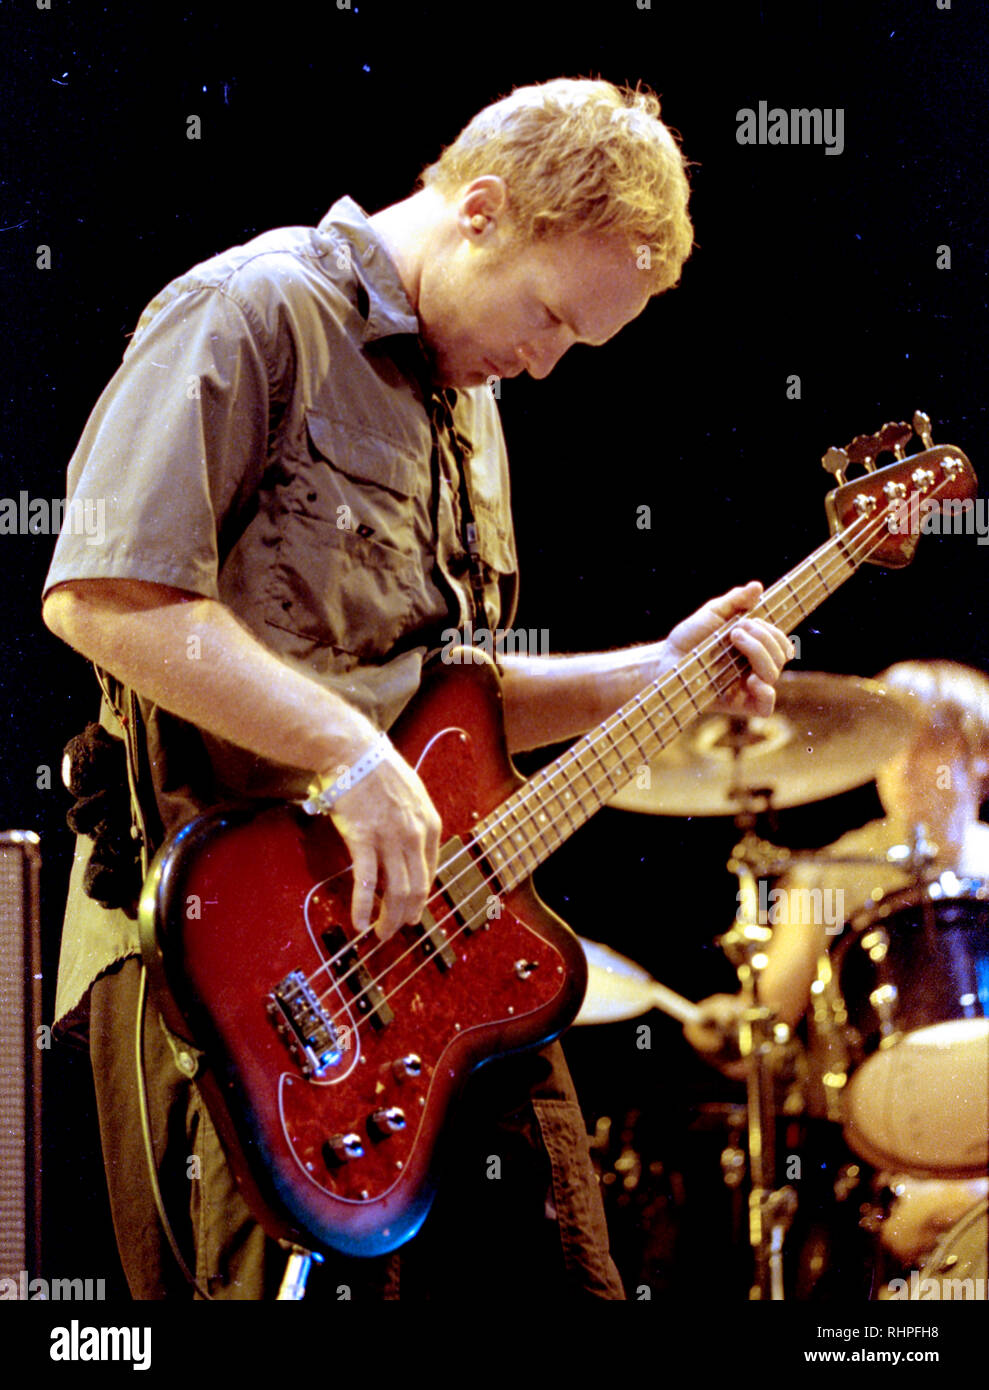 Pearl Jam's guitare basse Jeff Ament effectuant à le Tweeter Center à Mansfield, MA USA août 29,2000 photo de Bill belknap Banque D'Images